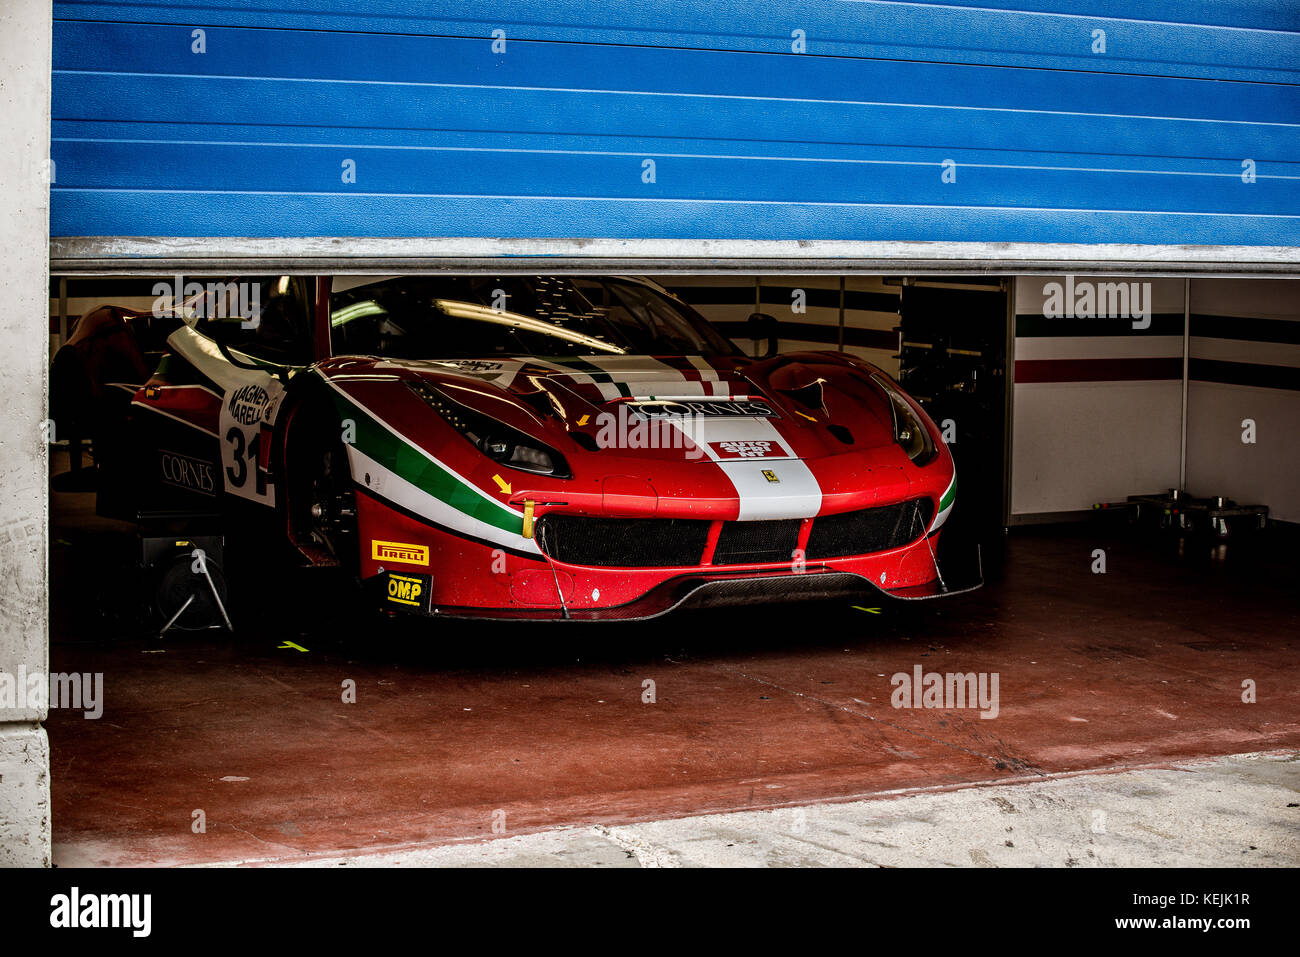 Vallelunga, en Italie le 24 septembre 2017. Touring rouge Ferrari racing voiture garée dans les enclos et fixation du travail autour du tuning voiture, espace clos Banque D'Images